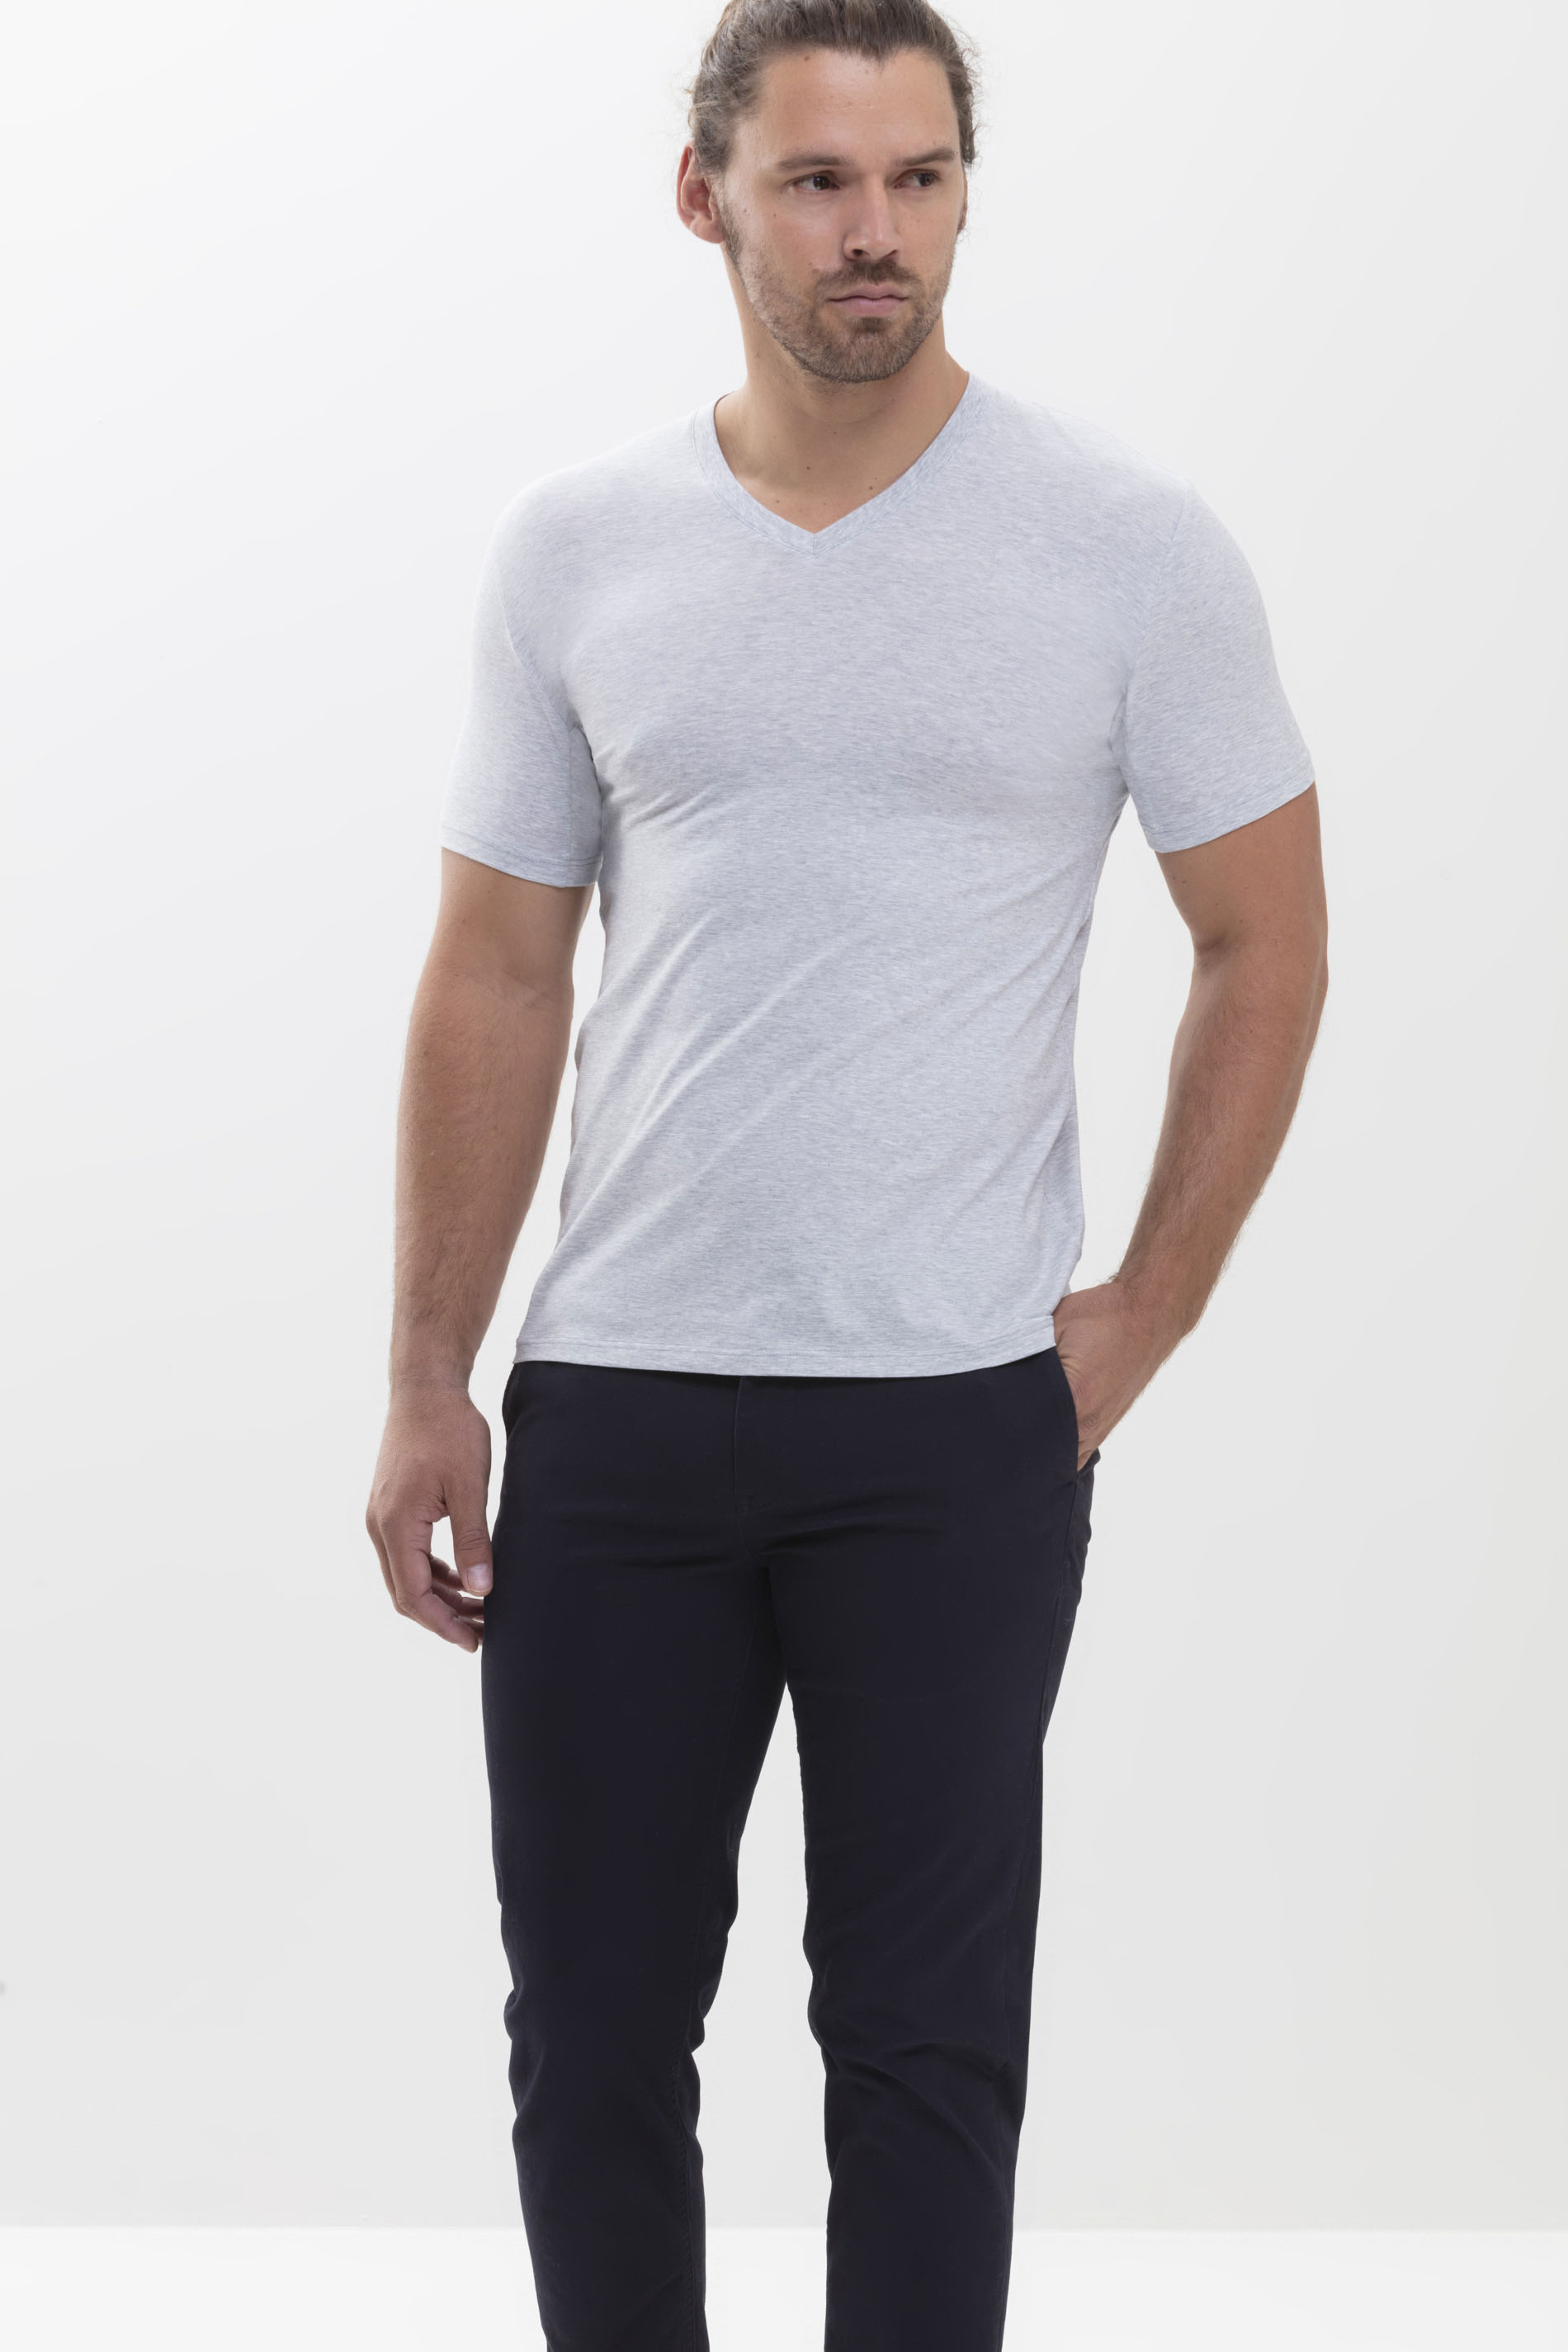 Hybride T-shirt Light Grey Melange Serie Hybrid T-Shirt Festlegen | mey®